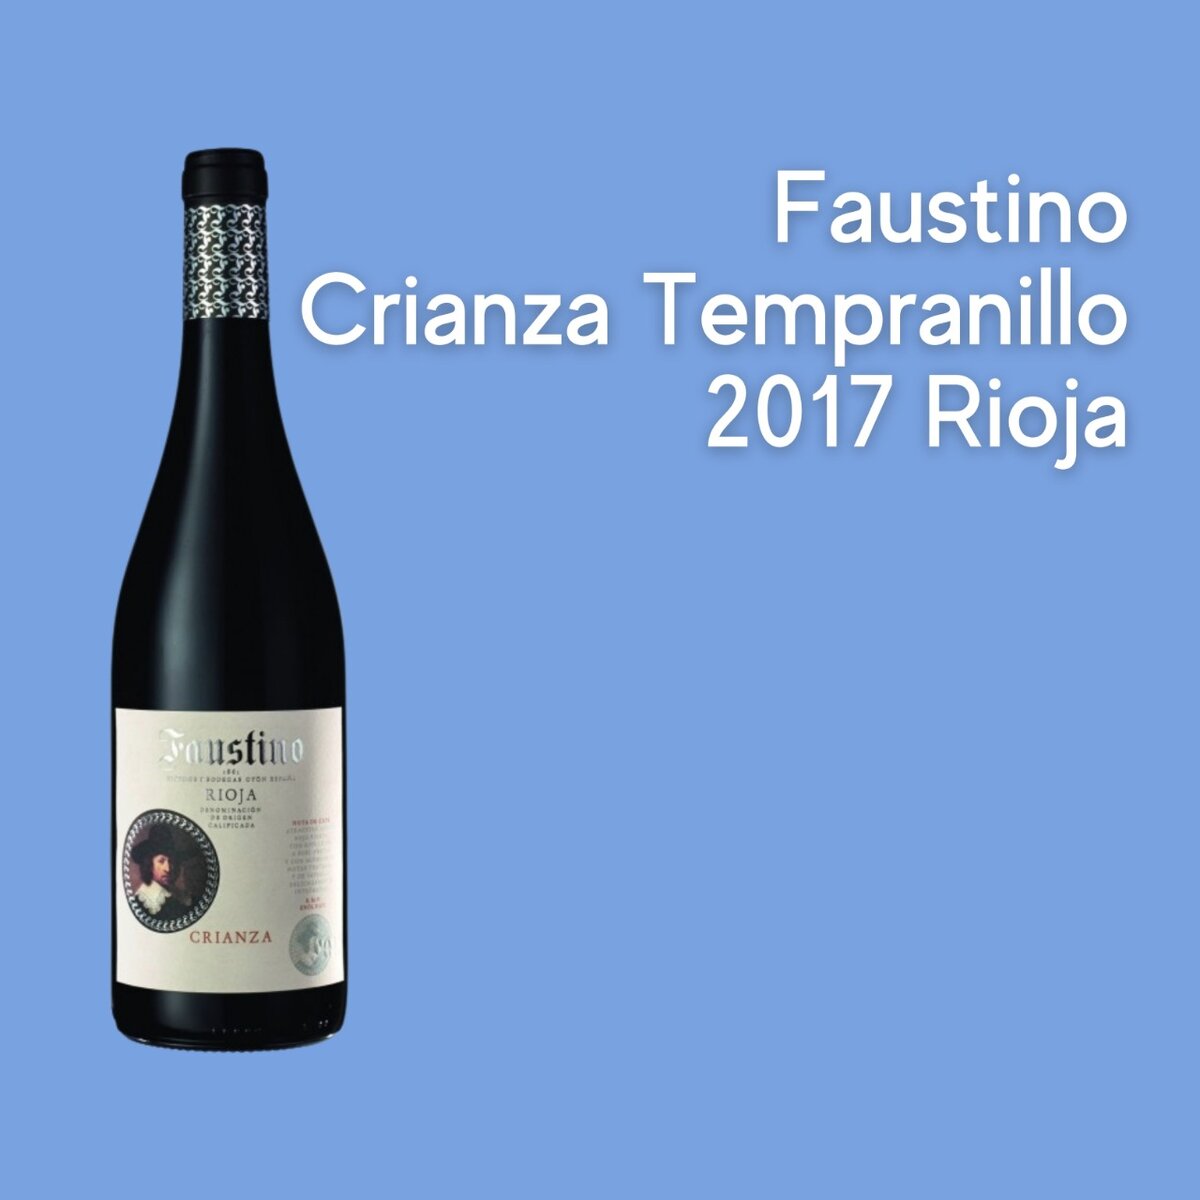 Faustino Crianza Tempranillo 2017 Rioja - прекрасно согревающее вино из Испании от одной из старейших виноделен. Сочное, богатое, страстное!